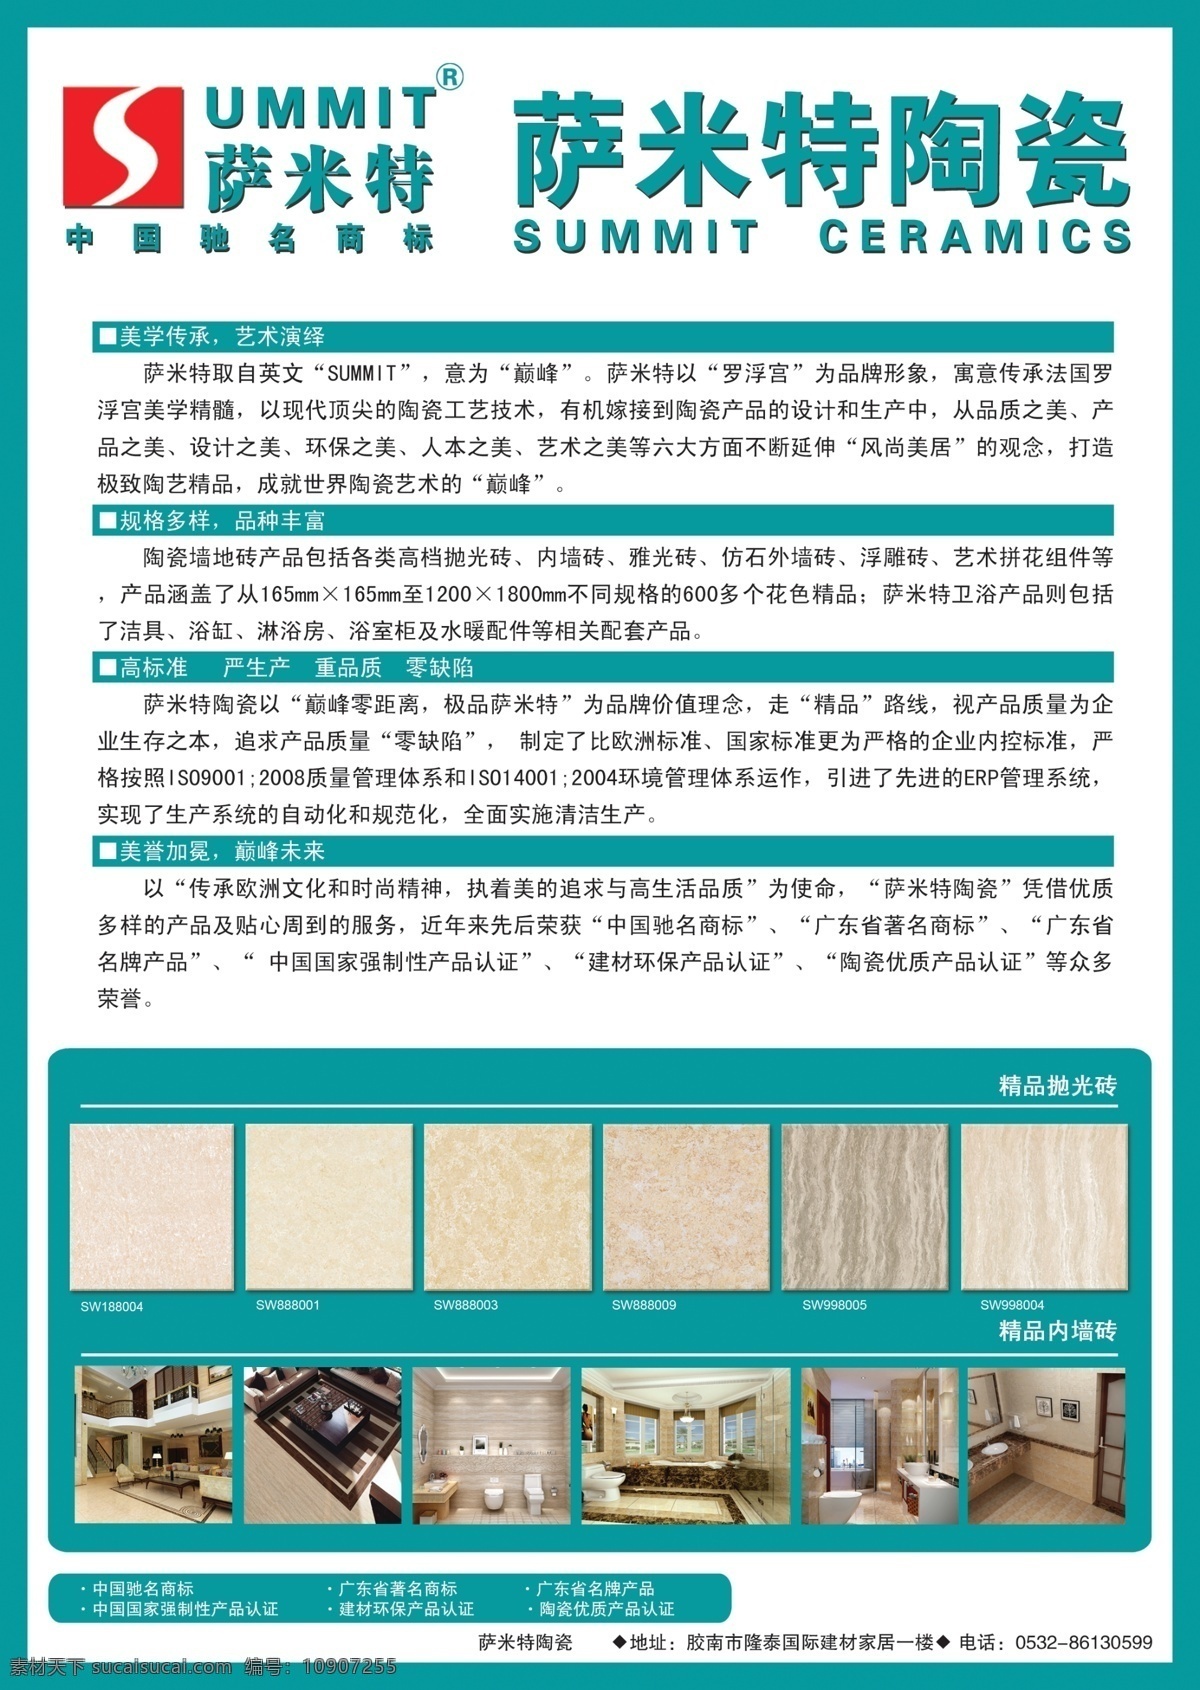 报纸广告 广告设计模板 萨米特 陶瓷 源文件 杂志广告 模板下载 萨米特陶瓷 其他海报设计